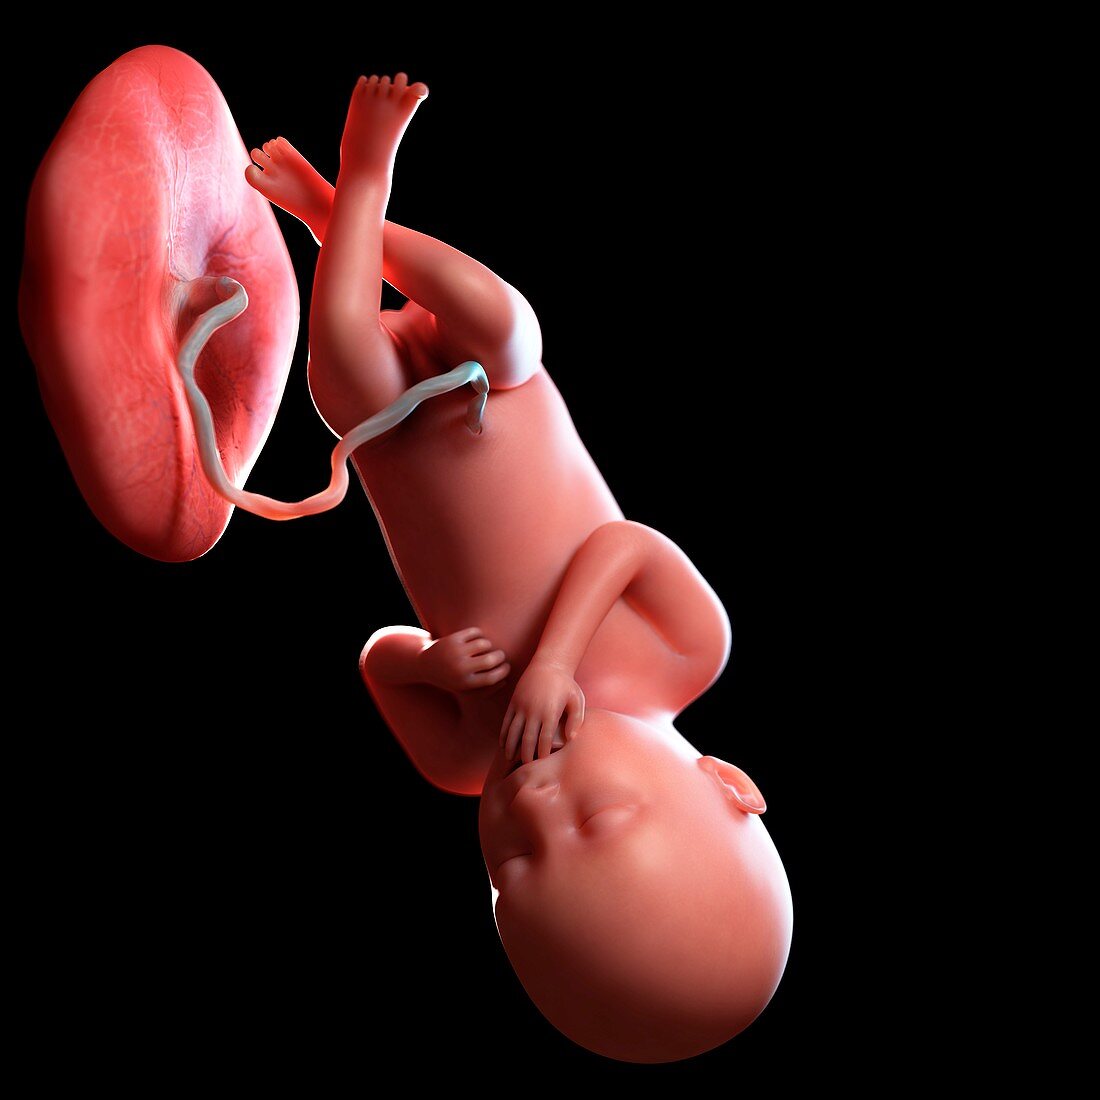 Human foetus age 36 weeks, illustration